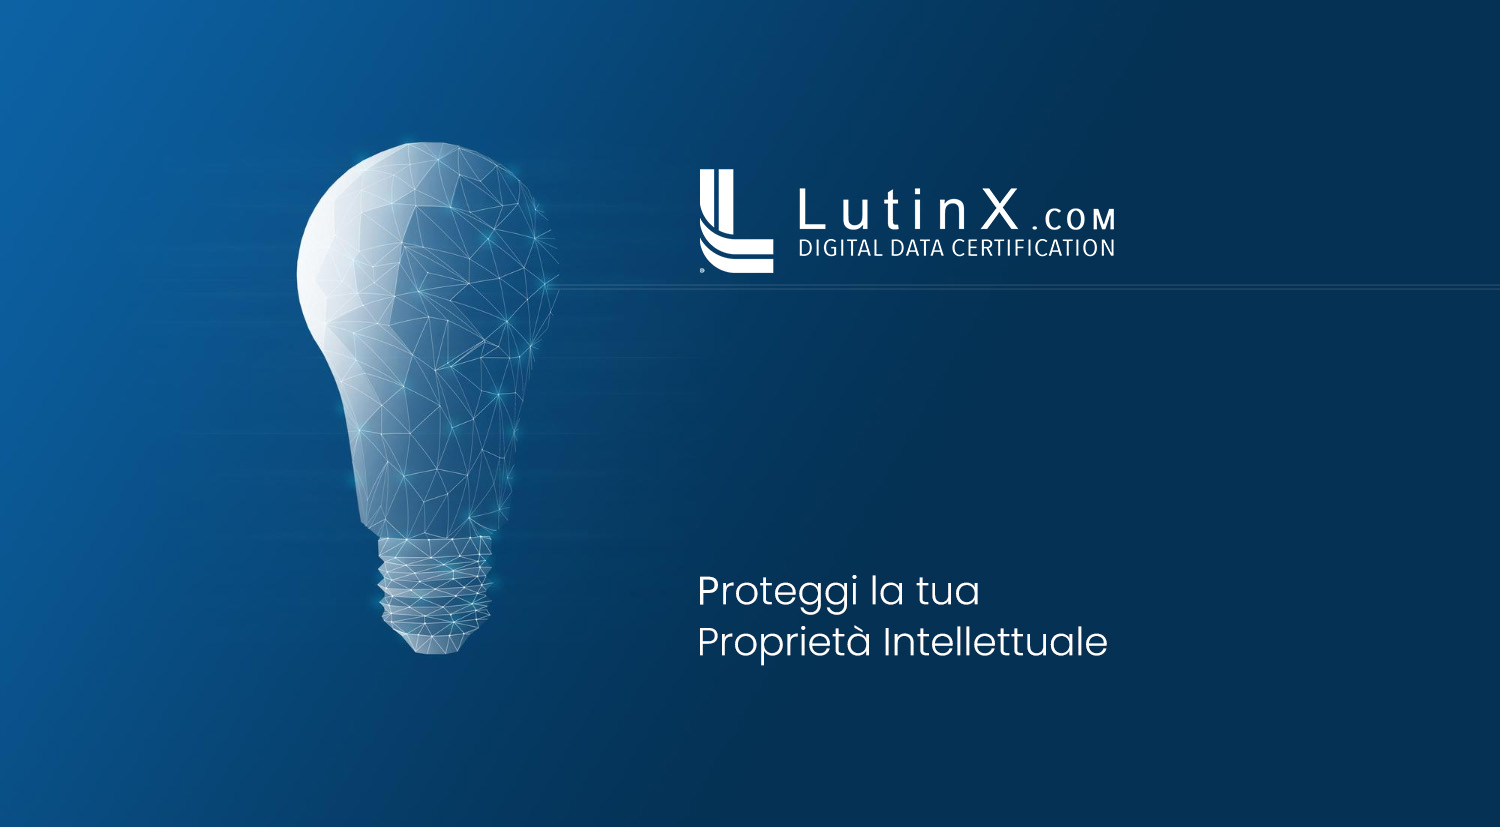 LutinX per la proprietà intellettuale